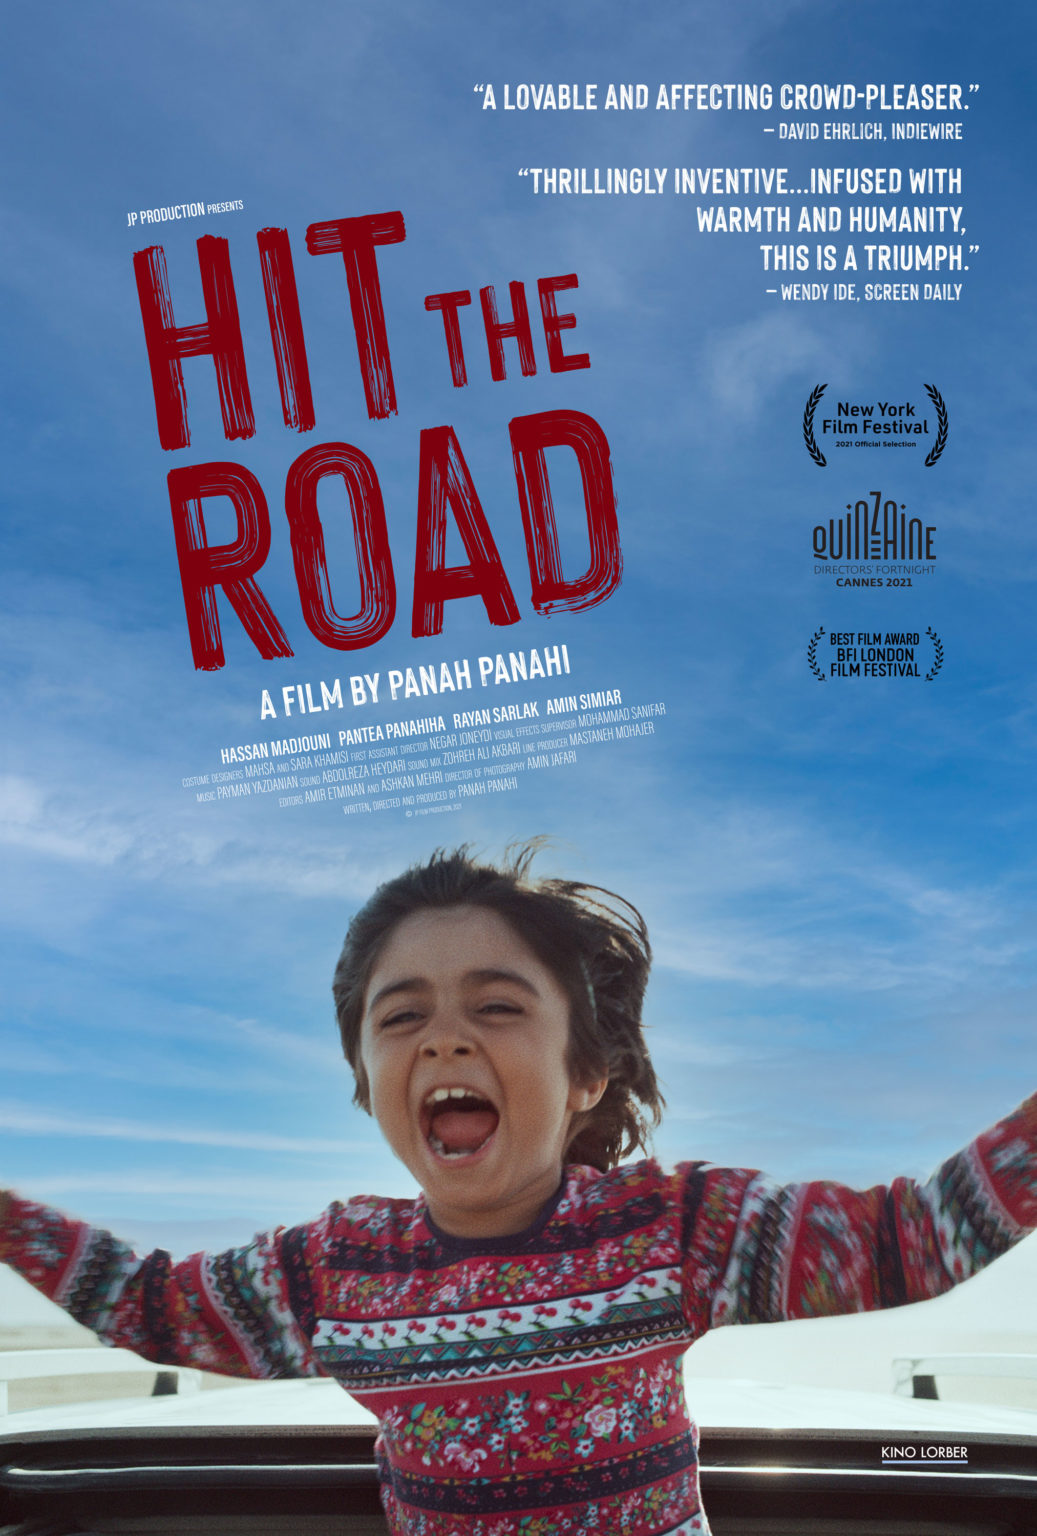 iran road trip movie